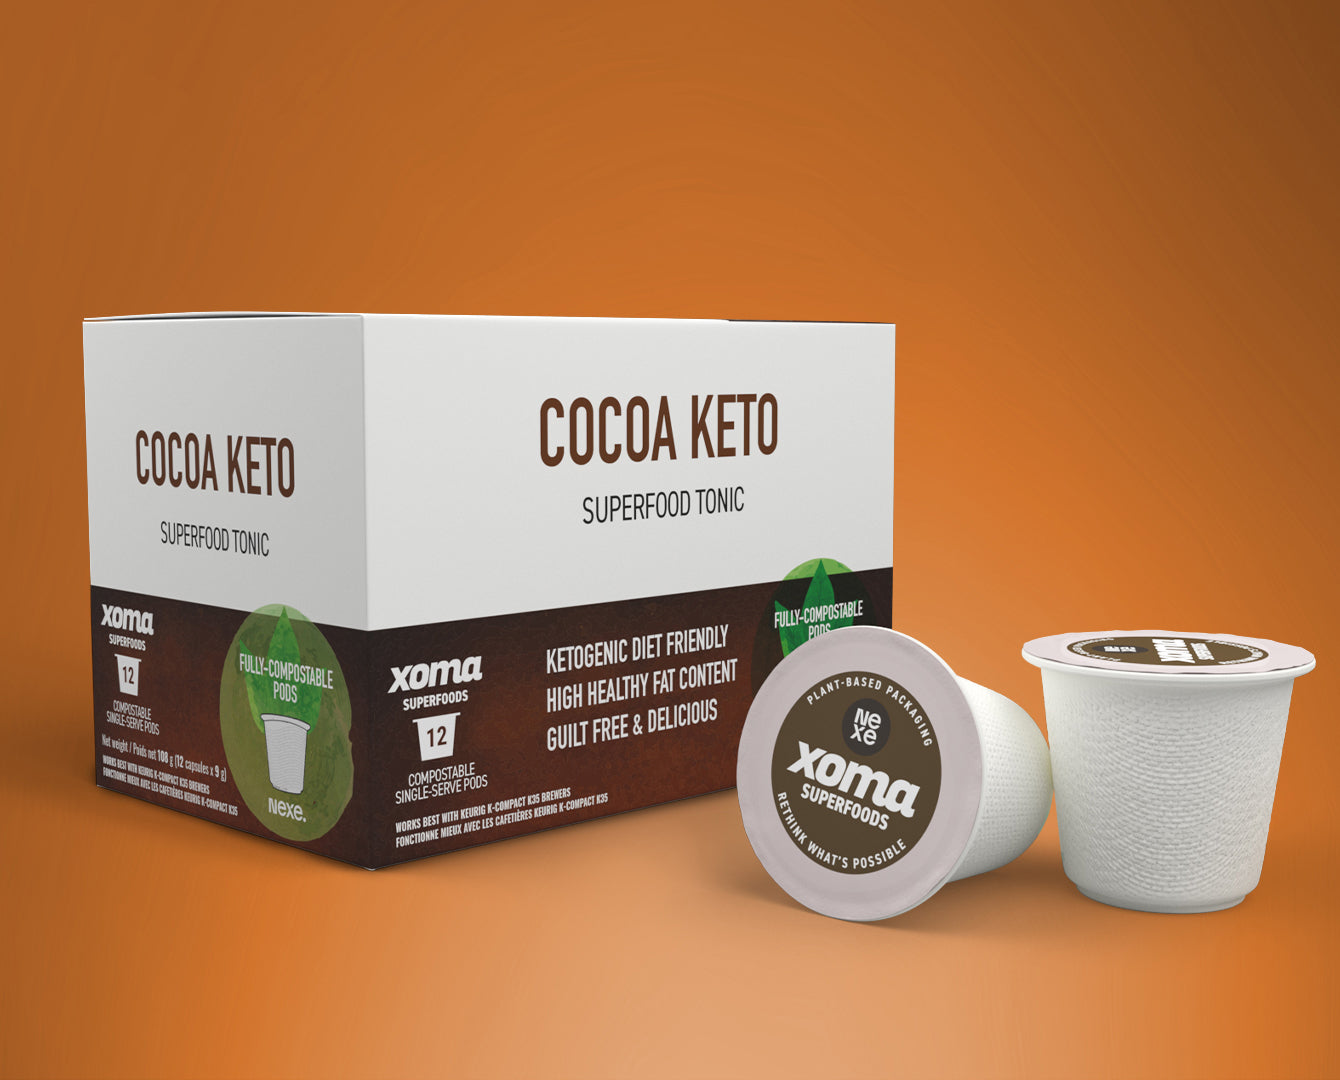 Cocoa Keto